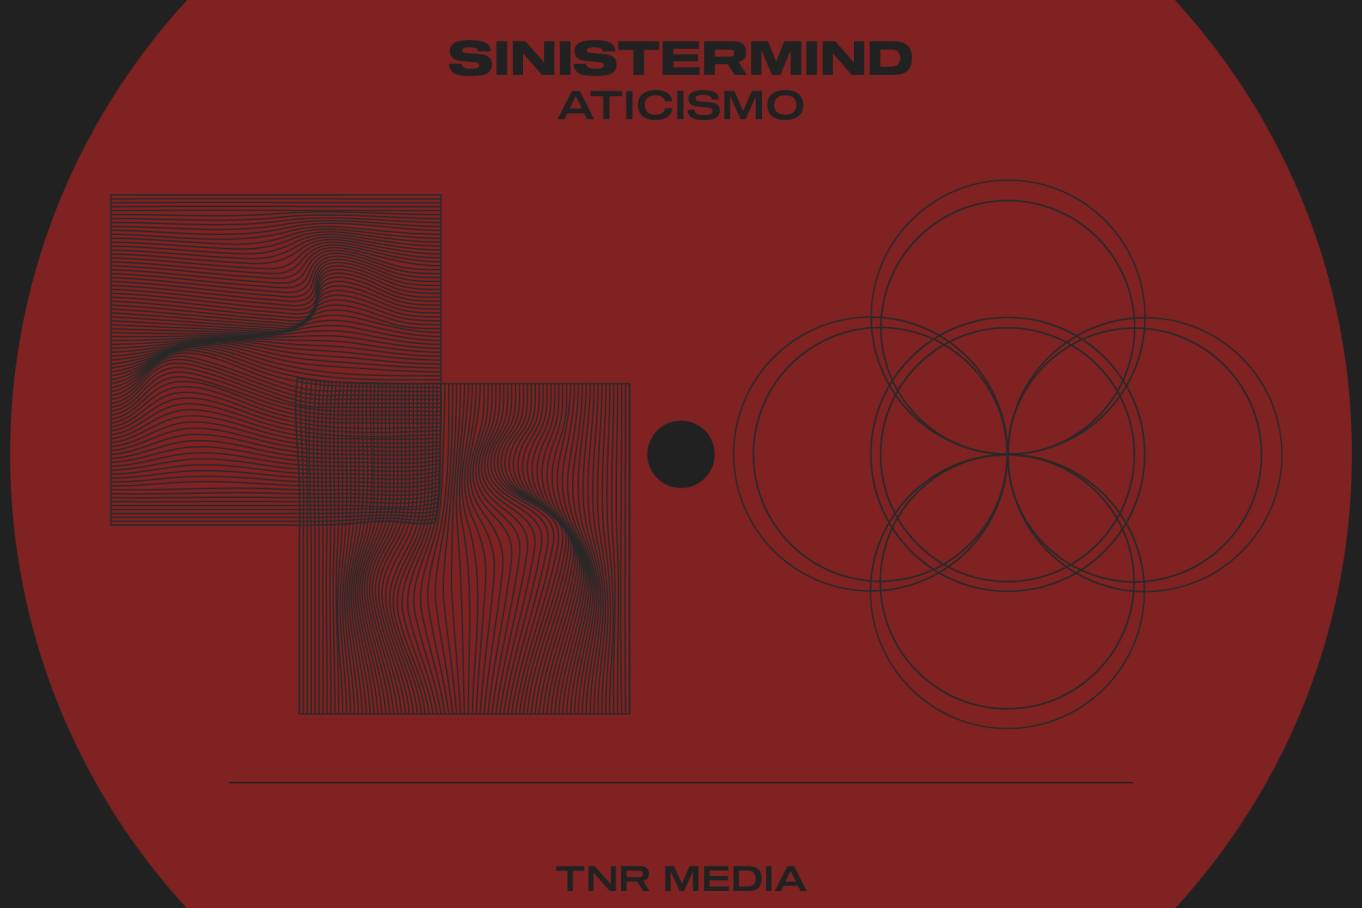 Escucha el nuevo álbum de Sinistermind 'Aticismo' en TNR MEDIA